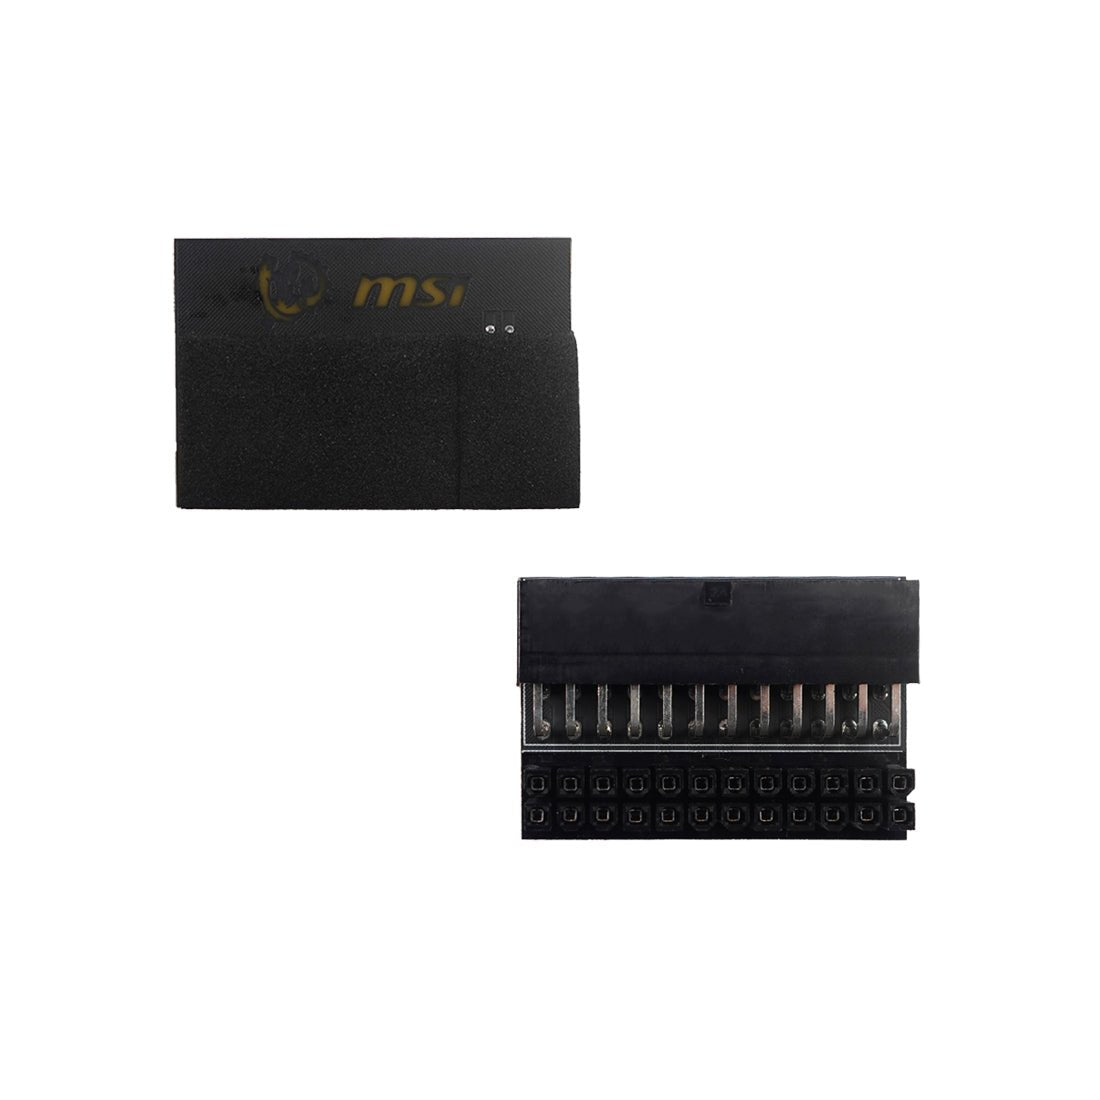 24 Pin ATX Motherboard Plug - MSI - مقبس - Store 974 | ستور ٩٧٤